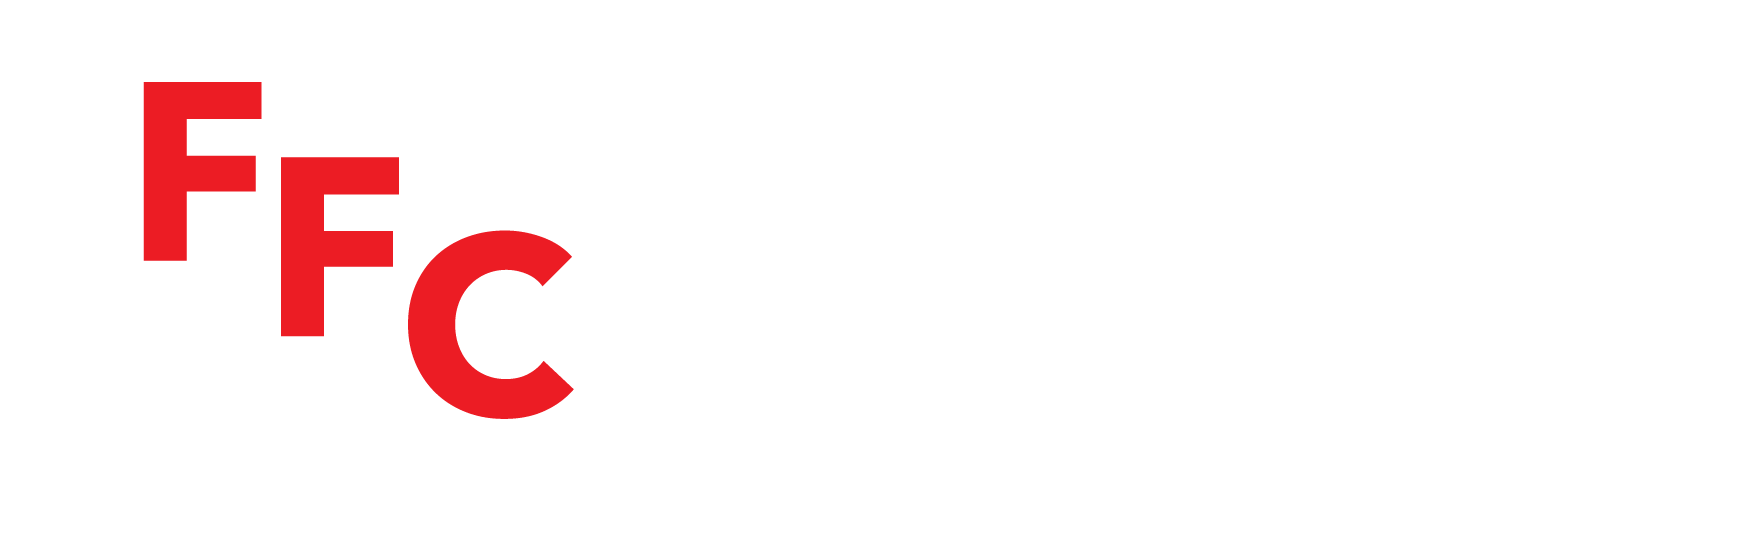 Fowler Flemister Concrete